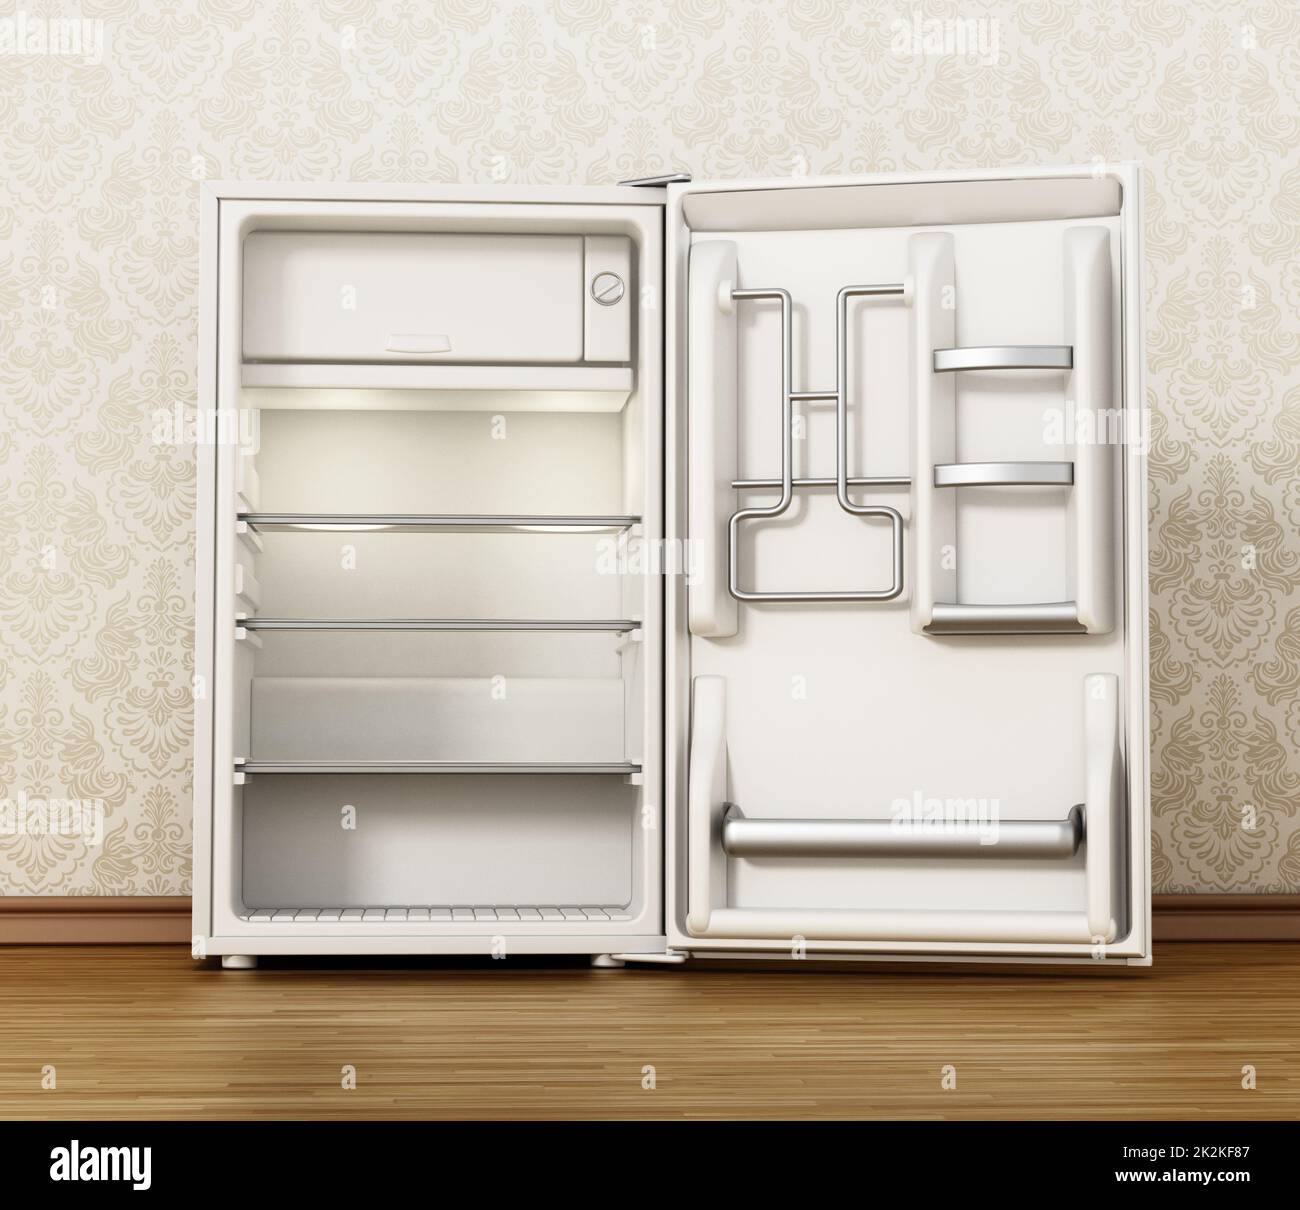 Petit réfrigérateur de l'hôtel sur parquet. 3D illustration Banque D'Images